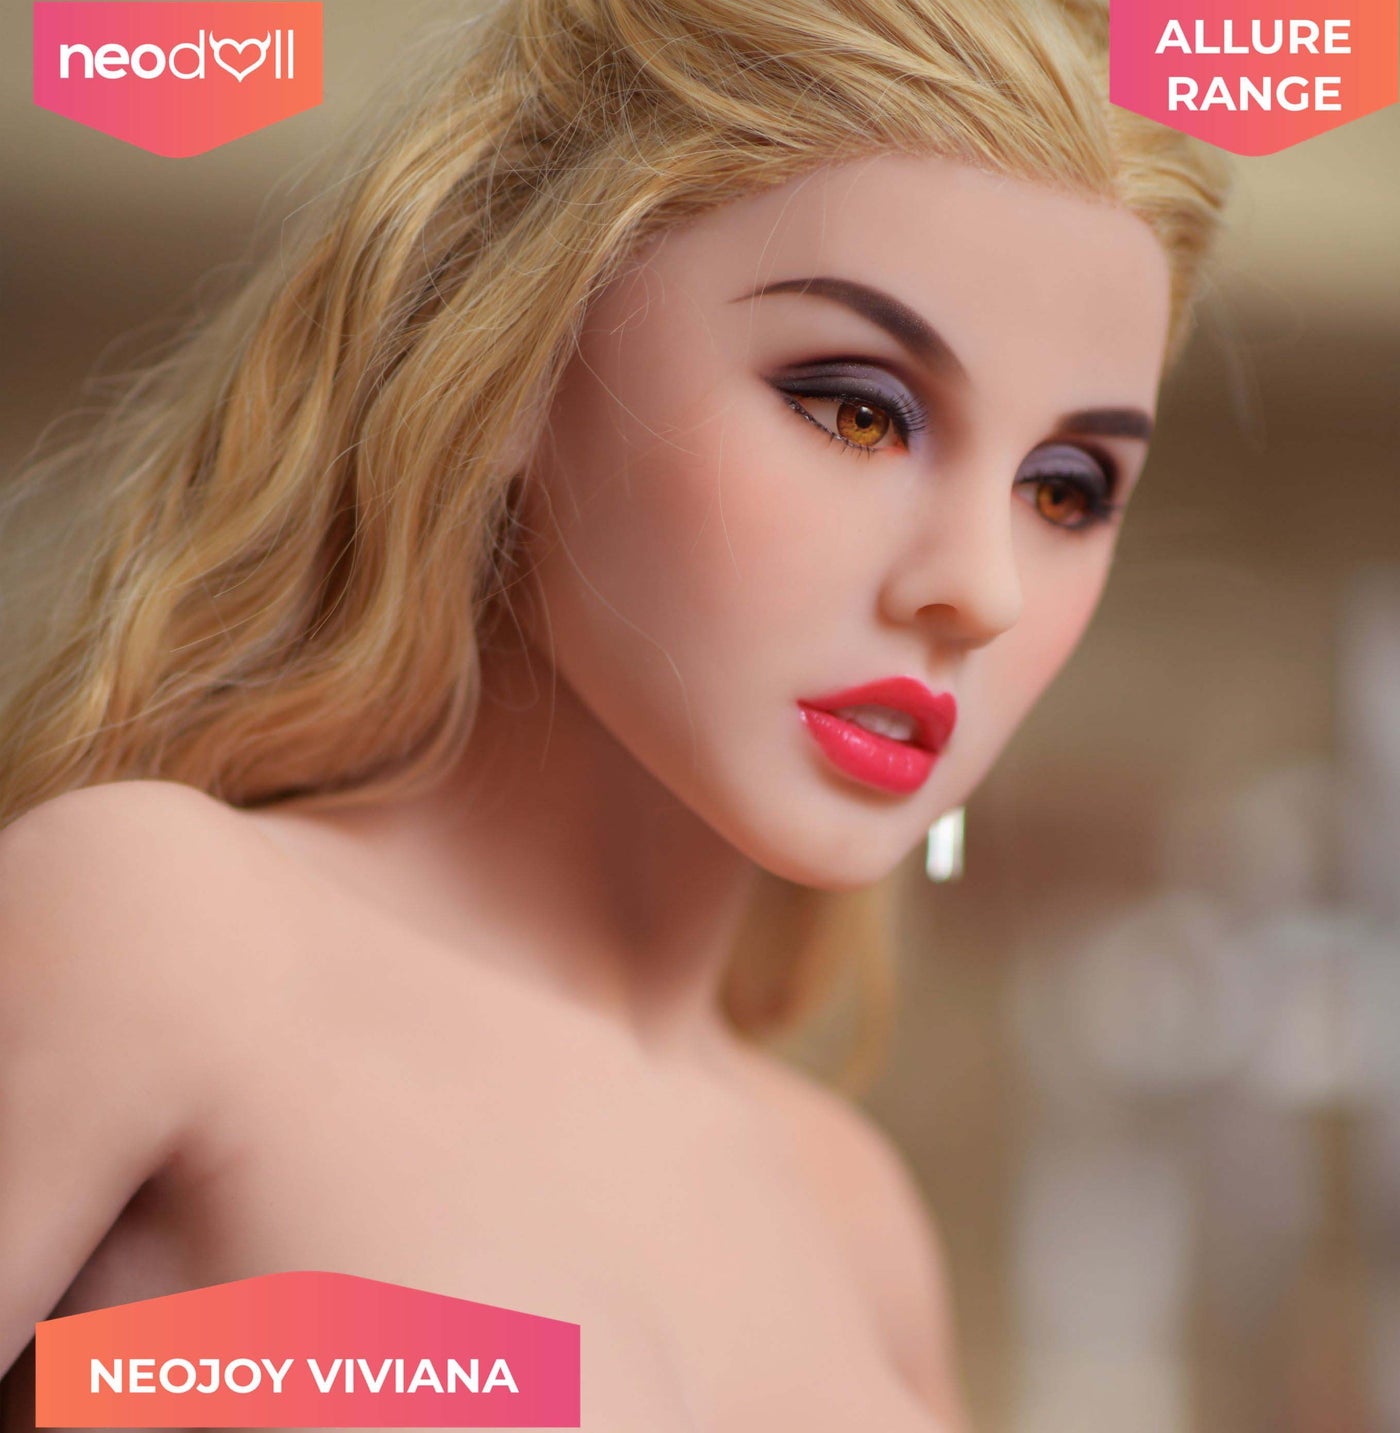 Neodoll Allure Viviana - Realistic Sex Doll - 150cm - Tan